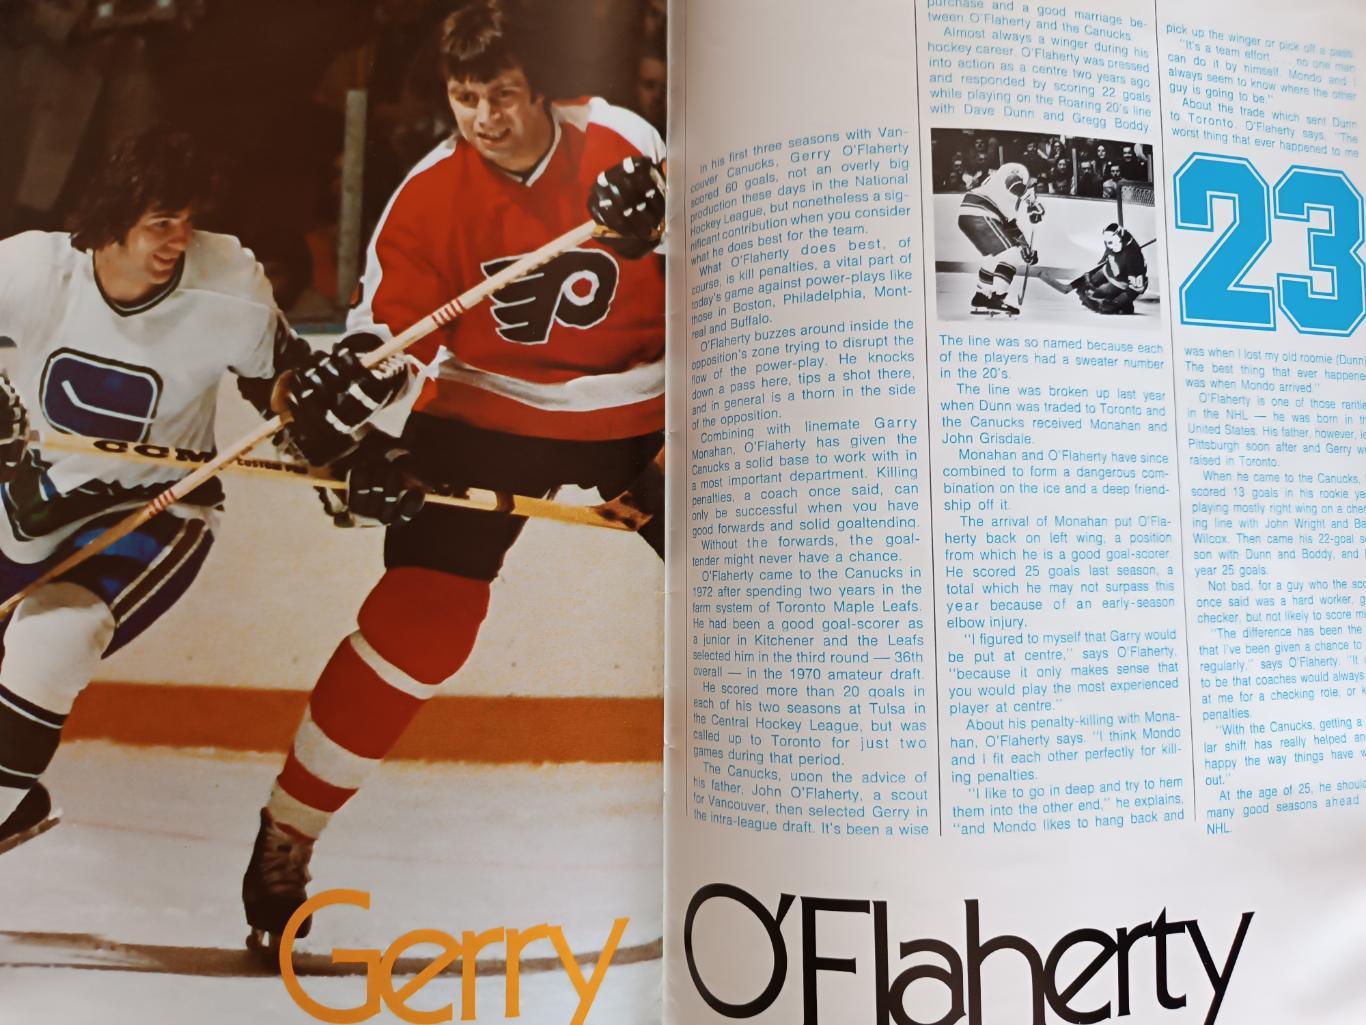 ХОККЕЙ АЛЬБОМ ЕЖЕГОДНИК НХЛ ВАНКУВЕР 1975-76 NHL ACTION ALBUM VANCOUVER CANUCKS 7